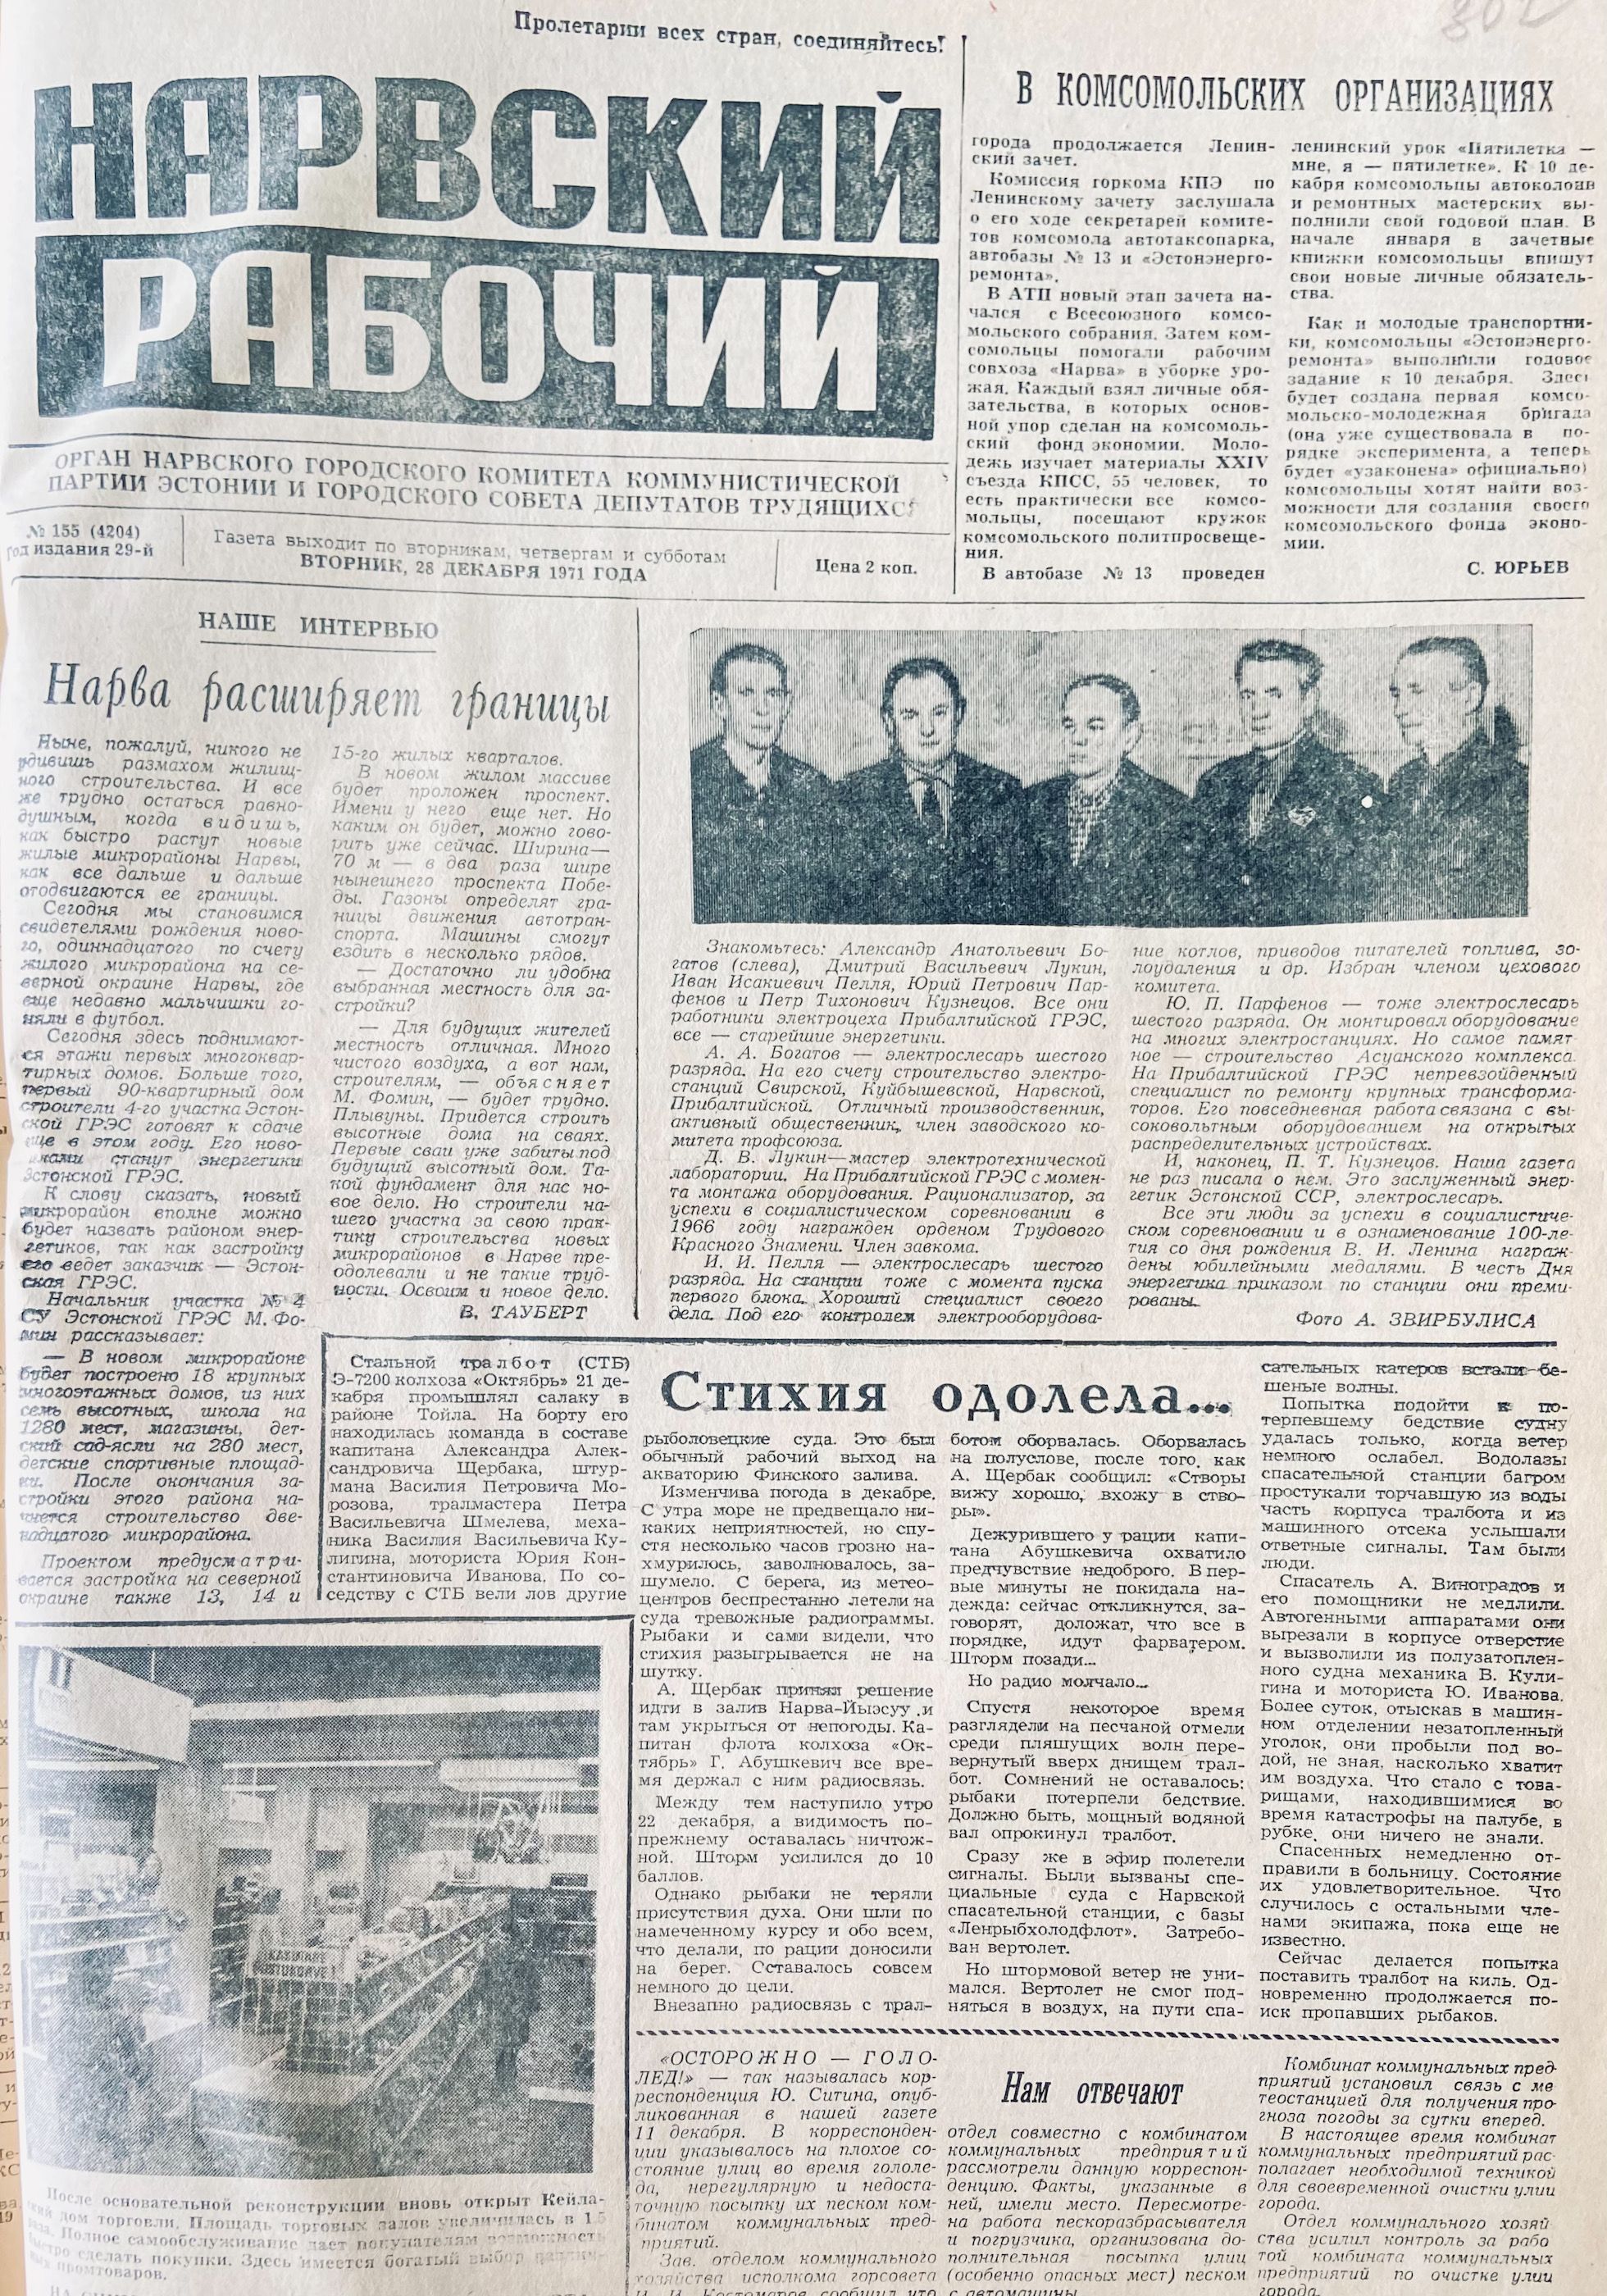 Первая страница "Нарвского рабочего" от 28 декабря 1971 года.